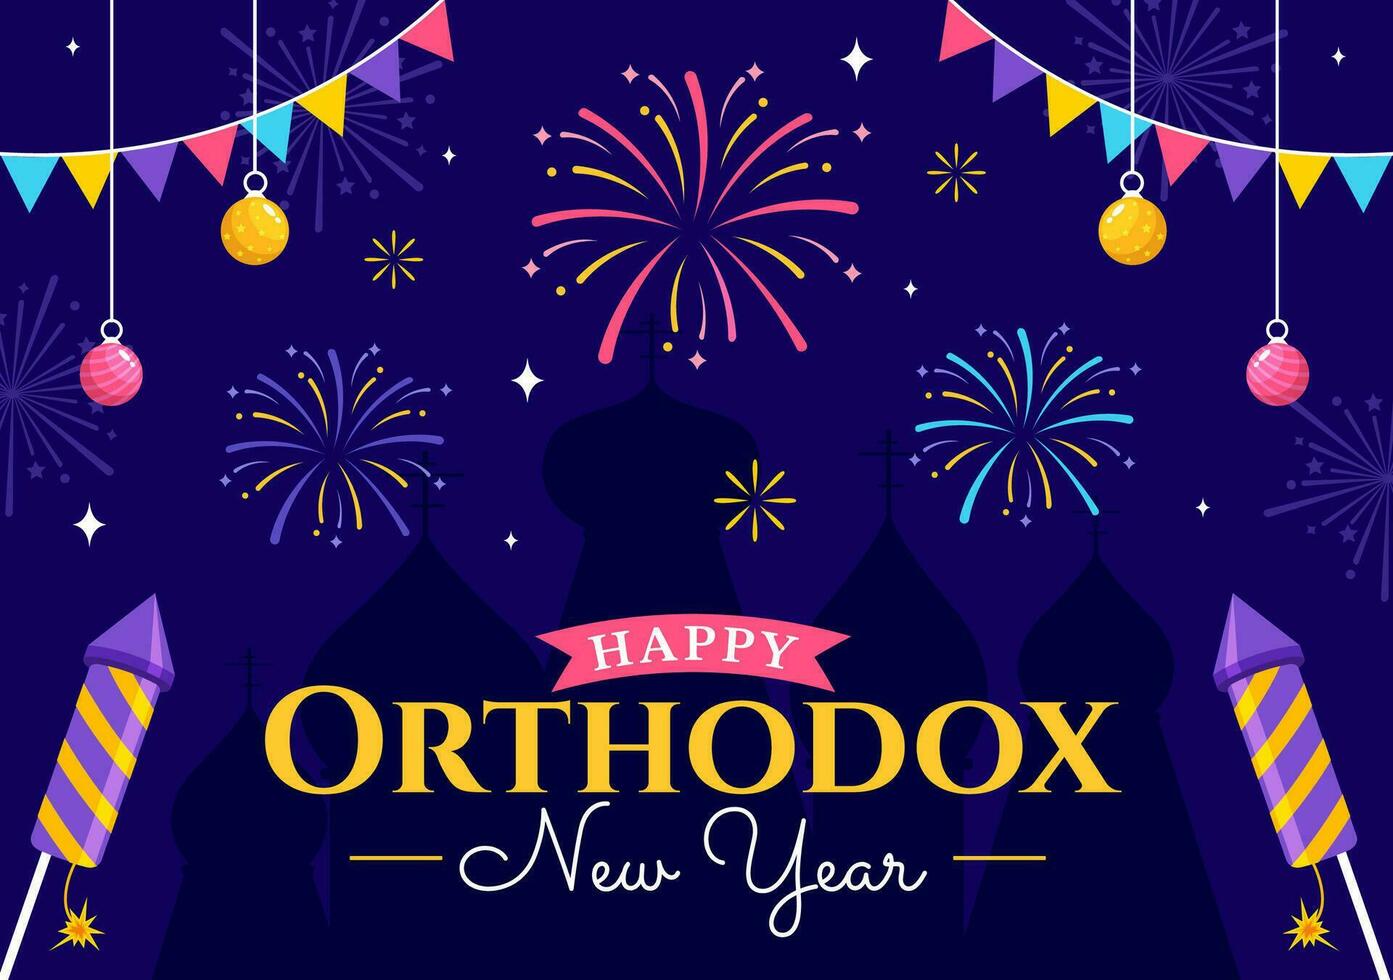 Lycklig ortodox ny år vektor illustration på 14 januari med kyrka och fyrverkeri för affisch eller baner i platt tecknad serie bakgrund design